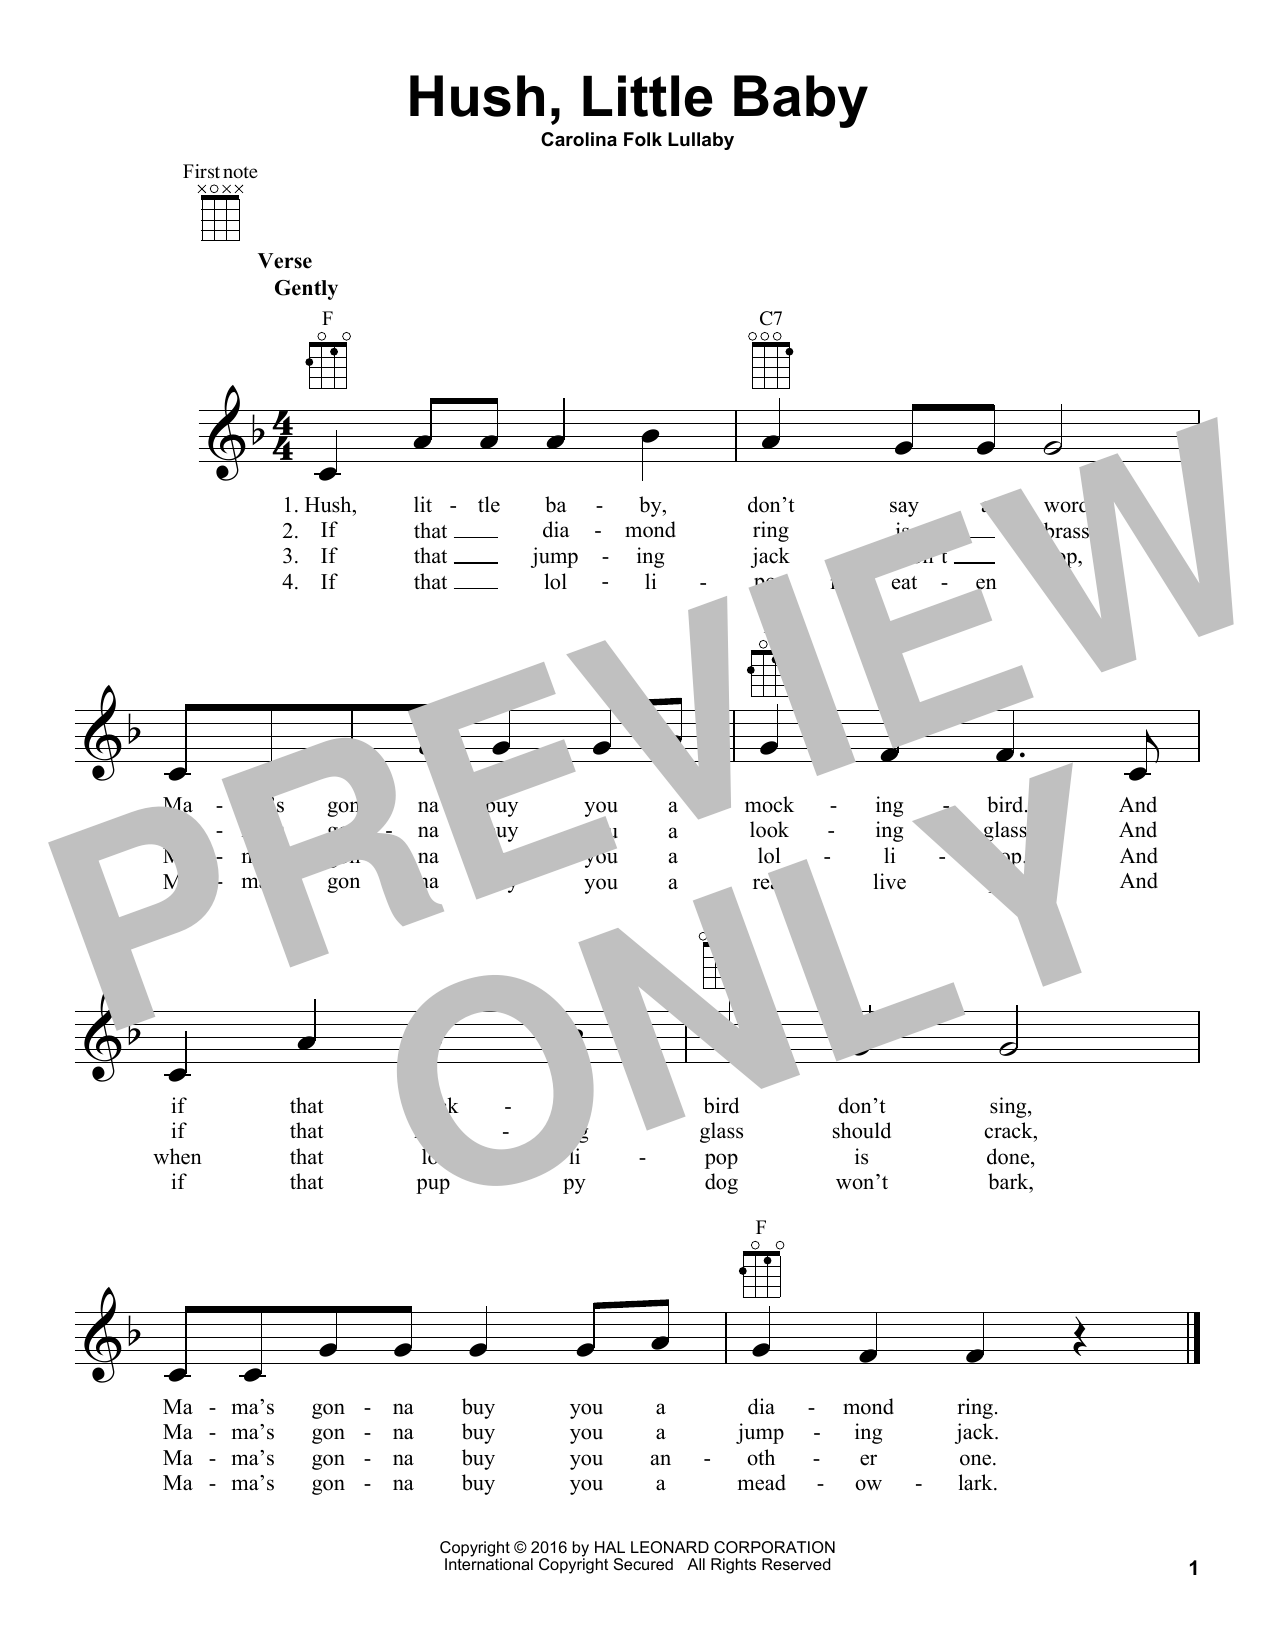 Carolina Folk Lullaby Hush, Little Baby Sheet Music Notes & Chords for UkeBuddy - Download or Print PDF